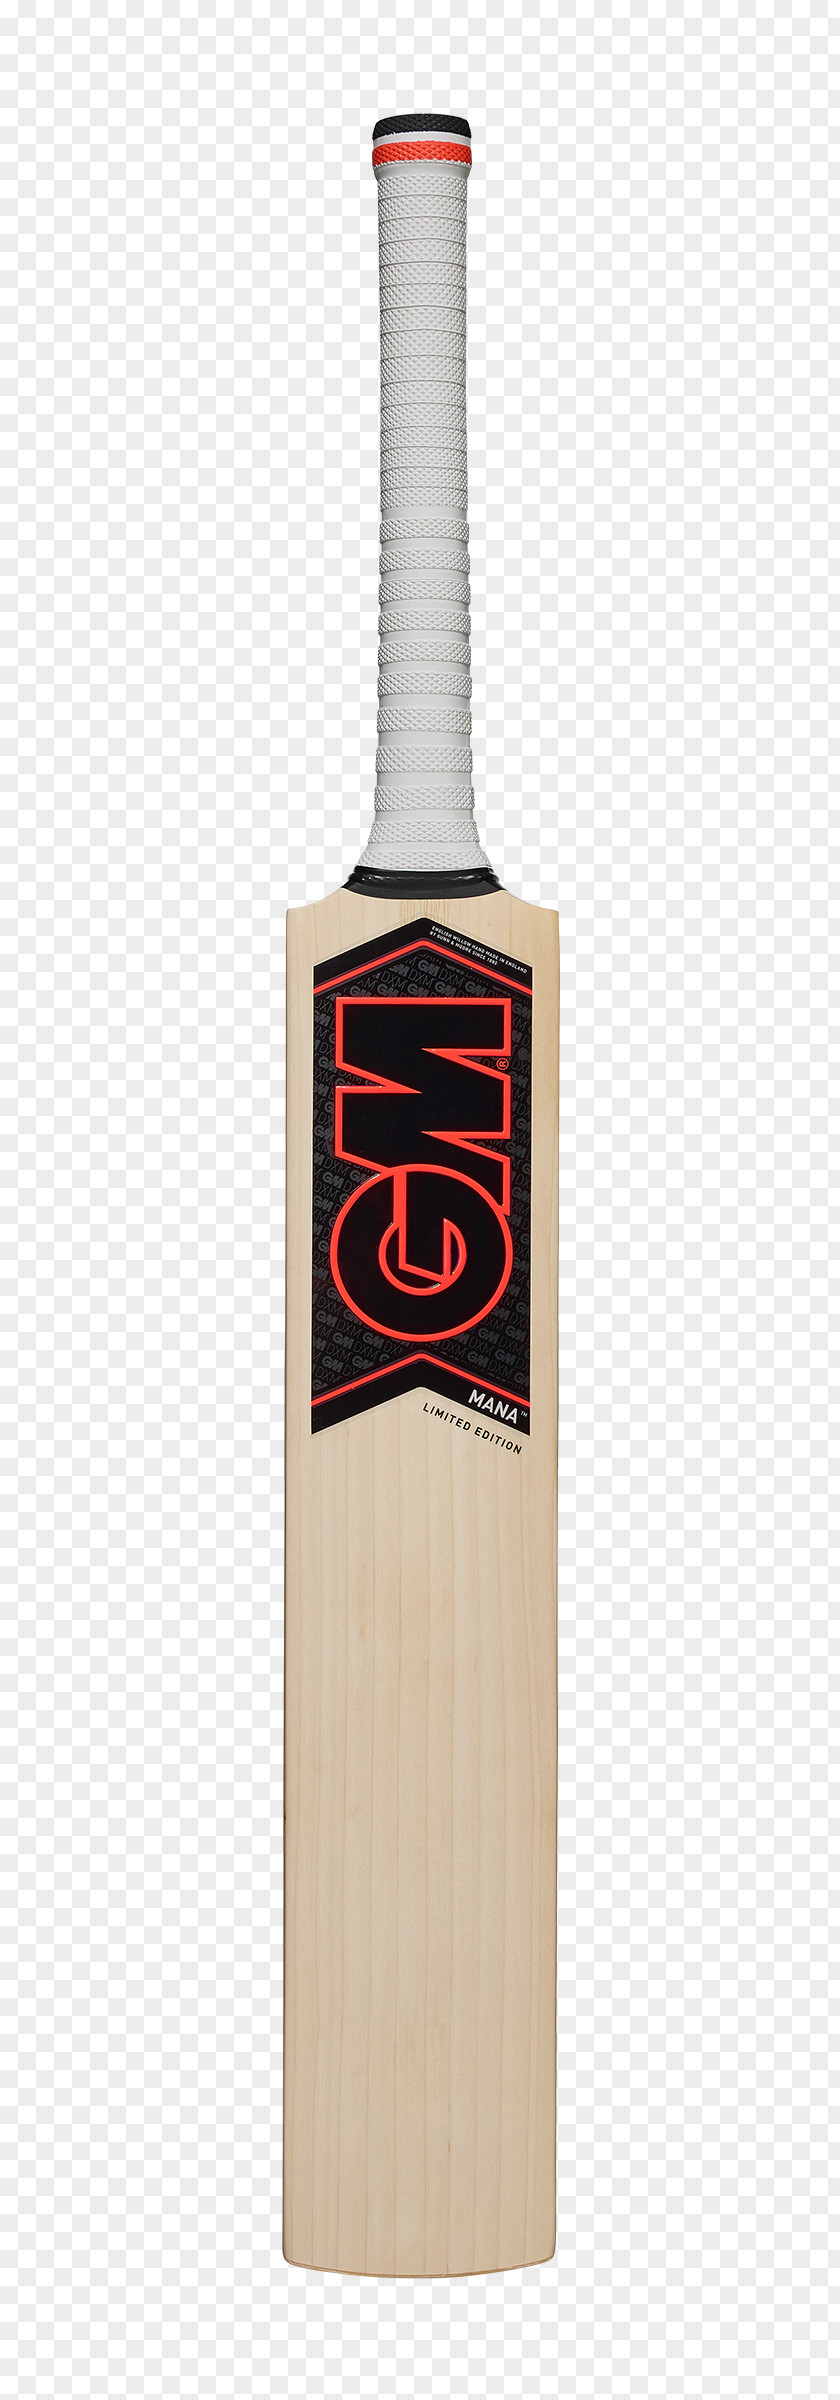 Cricket Bat Image Bats Gunn & Moore Batting Clothing And Equipment PNG